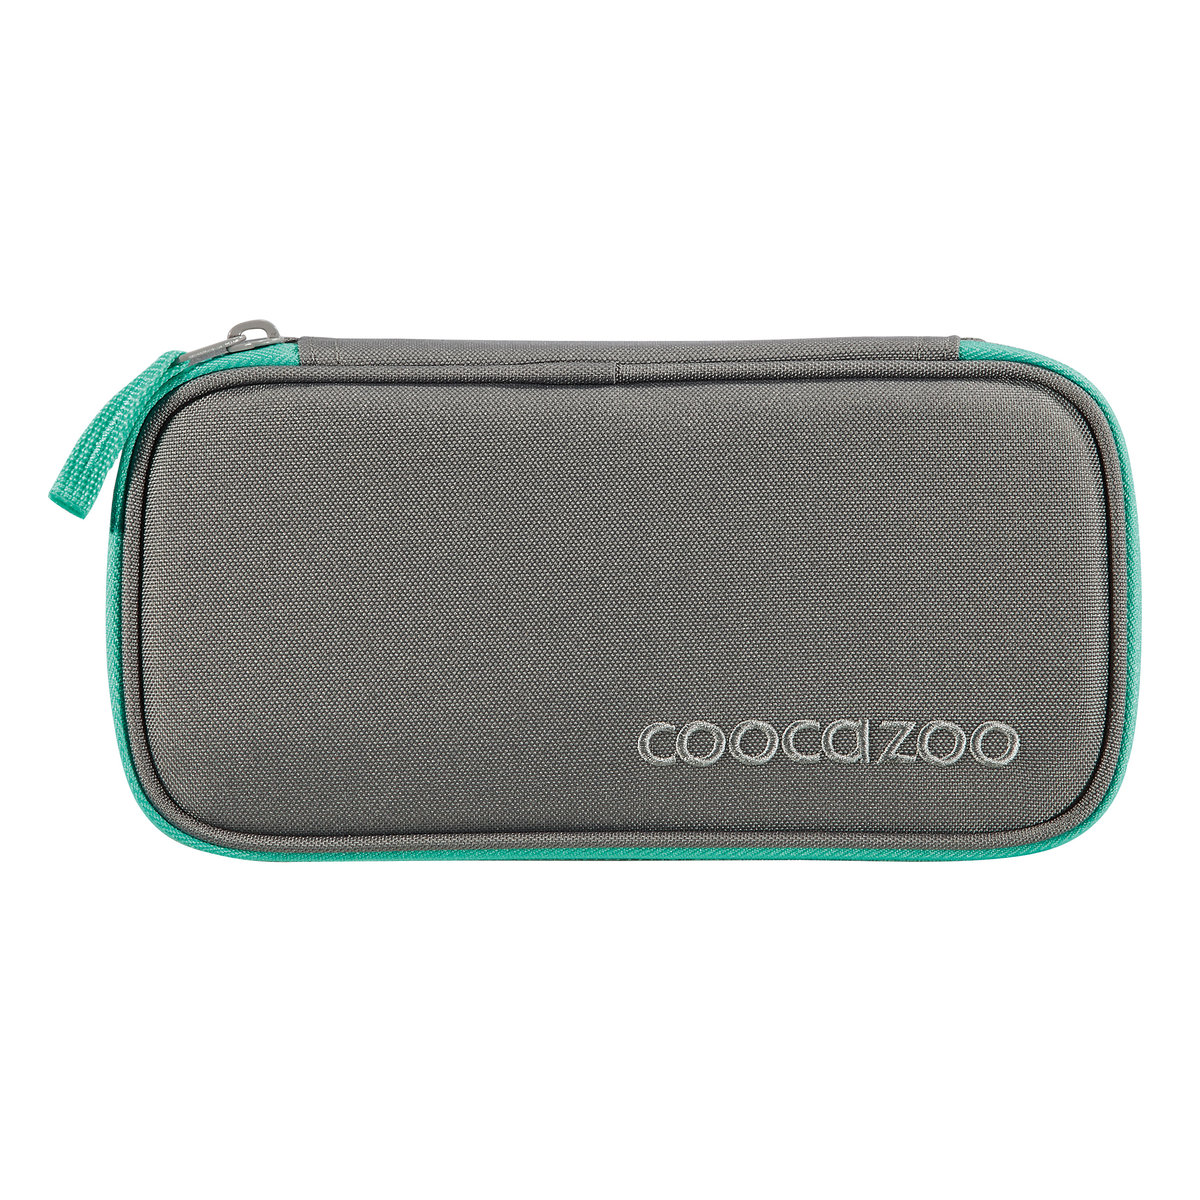 COOCAZOO 2.0 przybornik, kolor: Fresh Mint